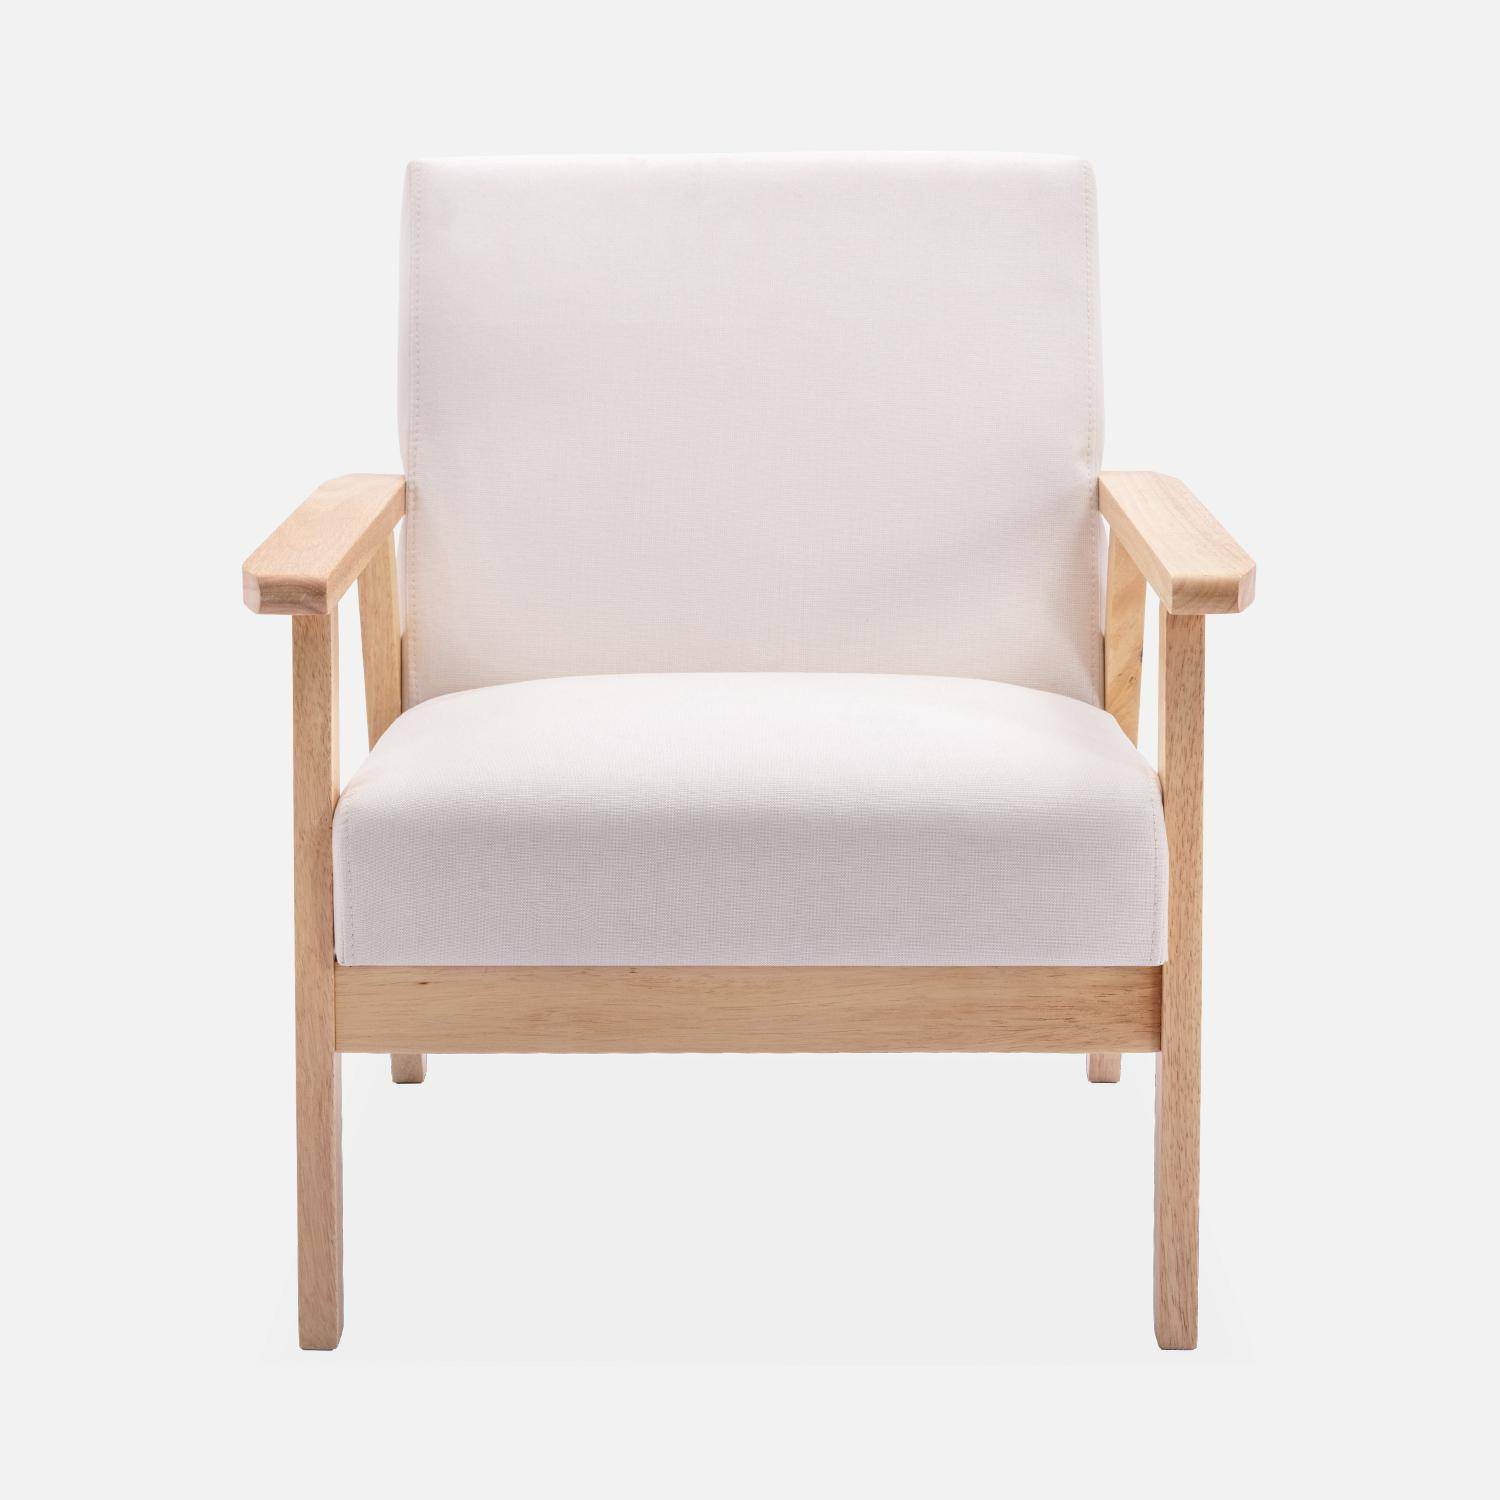 Banquette et fauteuil en bois et tissu crème, Isak, L 114 x l 69,5 x H 73cm Photo5